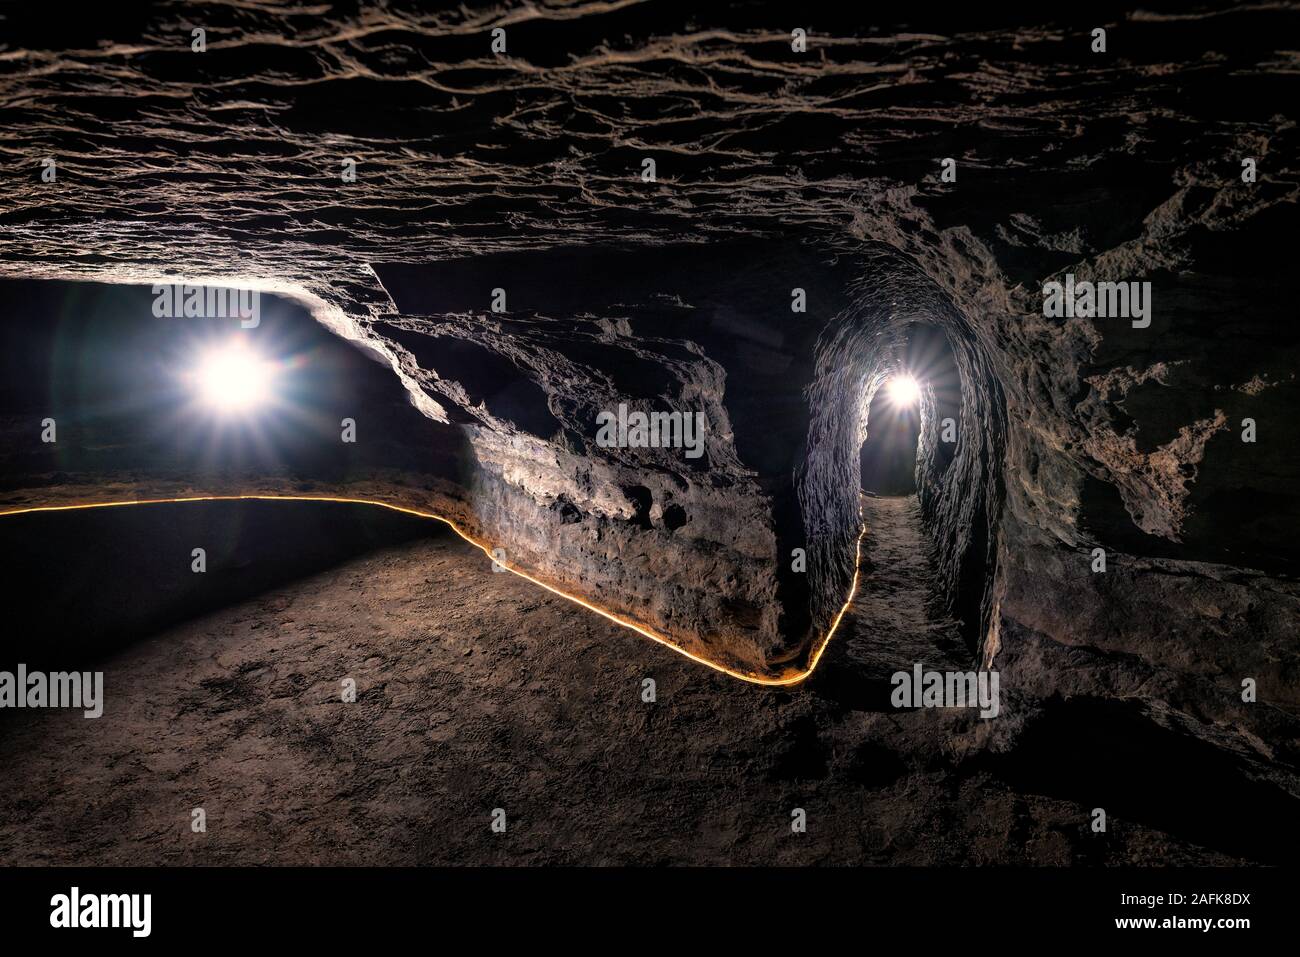 Cuevas de Hella, Islandia. Cavernas hechas por el hombre, podrían ser realizadas por los Celtas que habitaban Islandia ante el diario colonia escandinava, a finales del siglo IX. Foto de stock